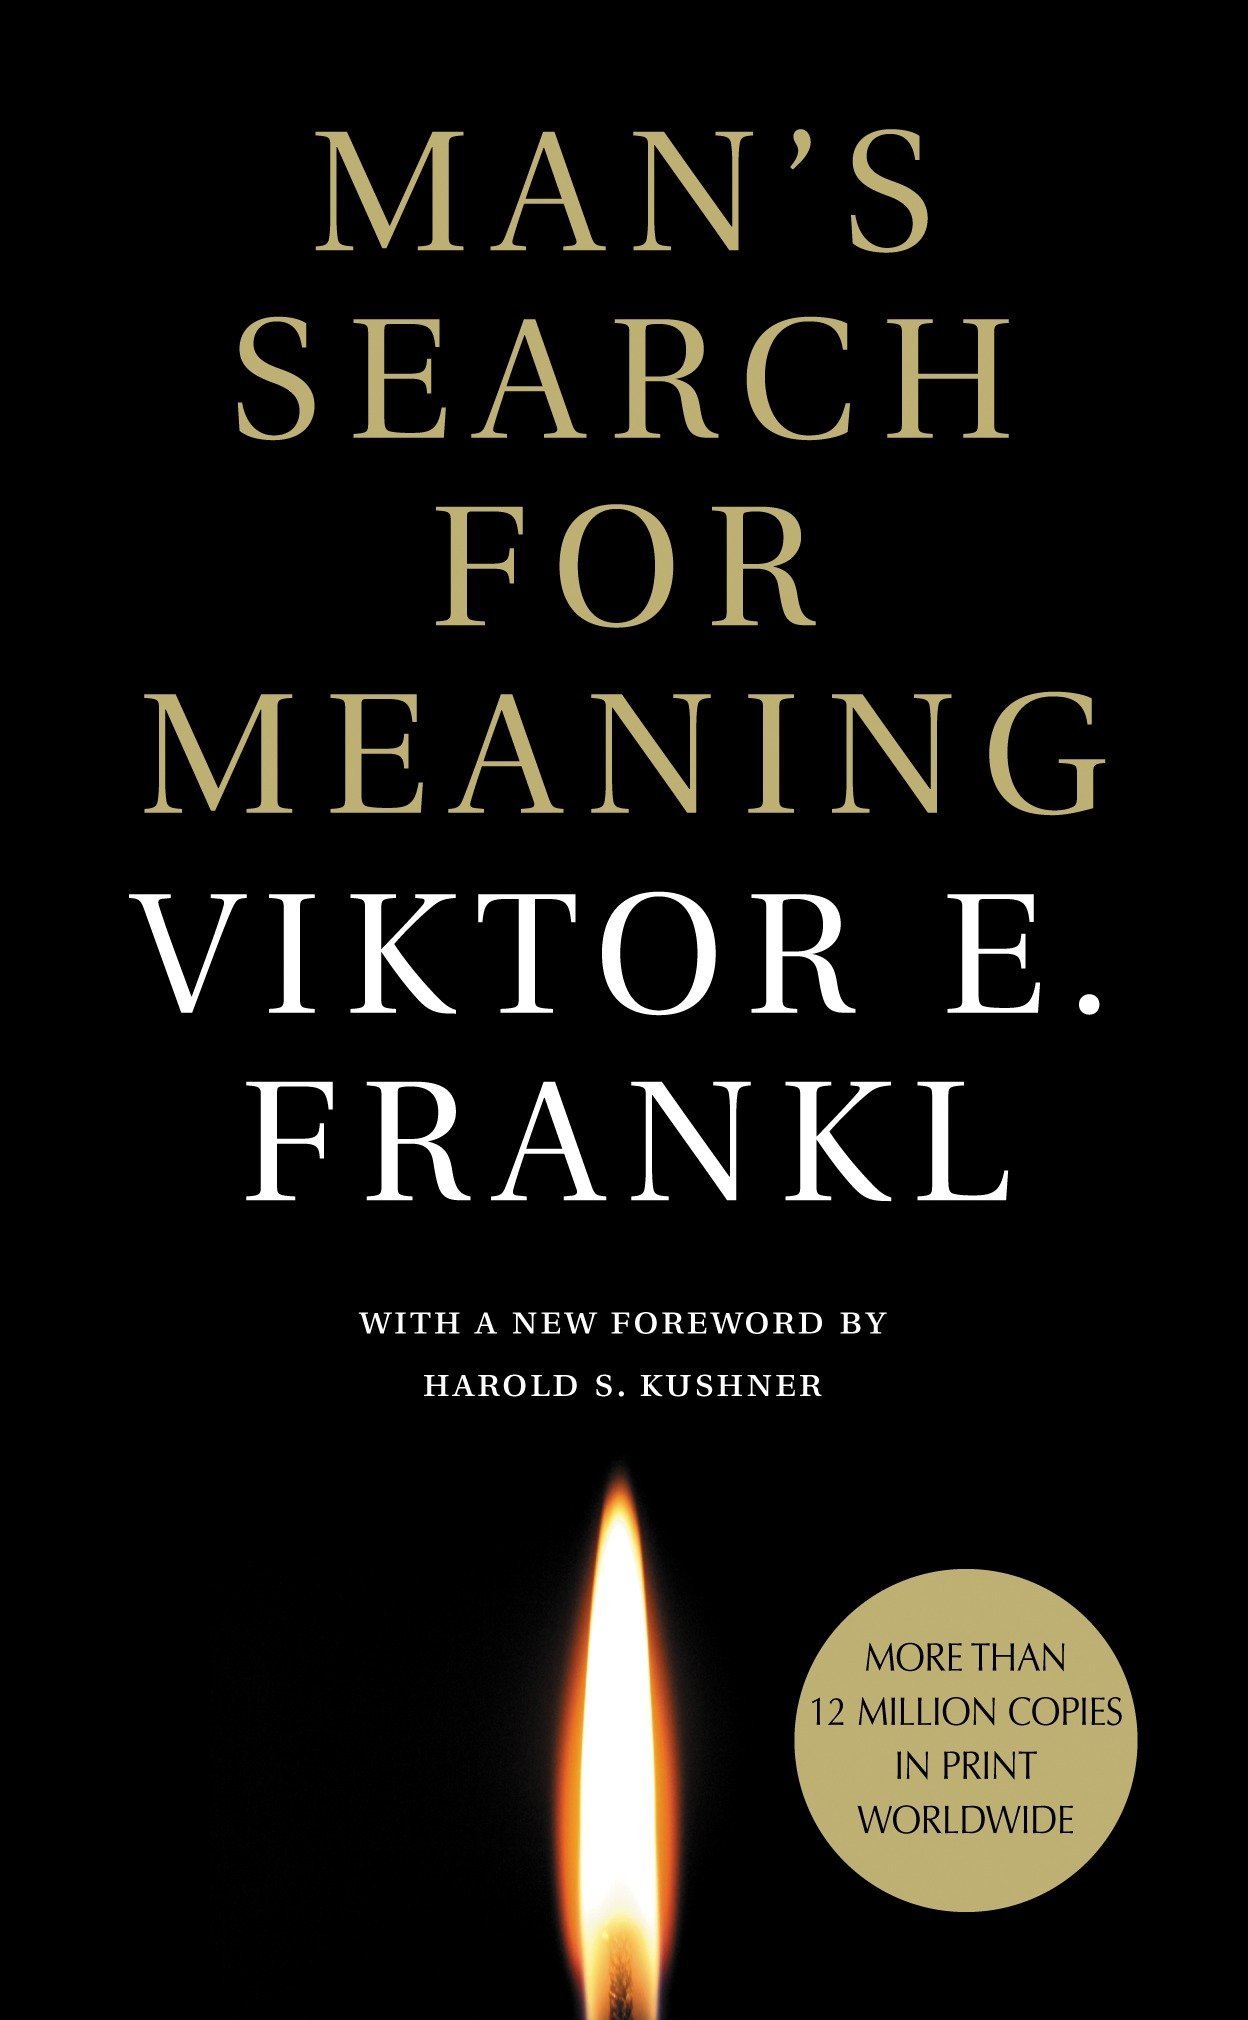 20 Viktor Frankl សម្រង់អំពីការឱបក្រសោបទុក្ខវេទនា និងការរស់នៅពេញមួយជីវិត